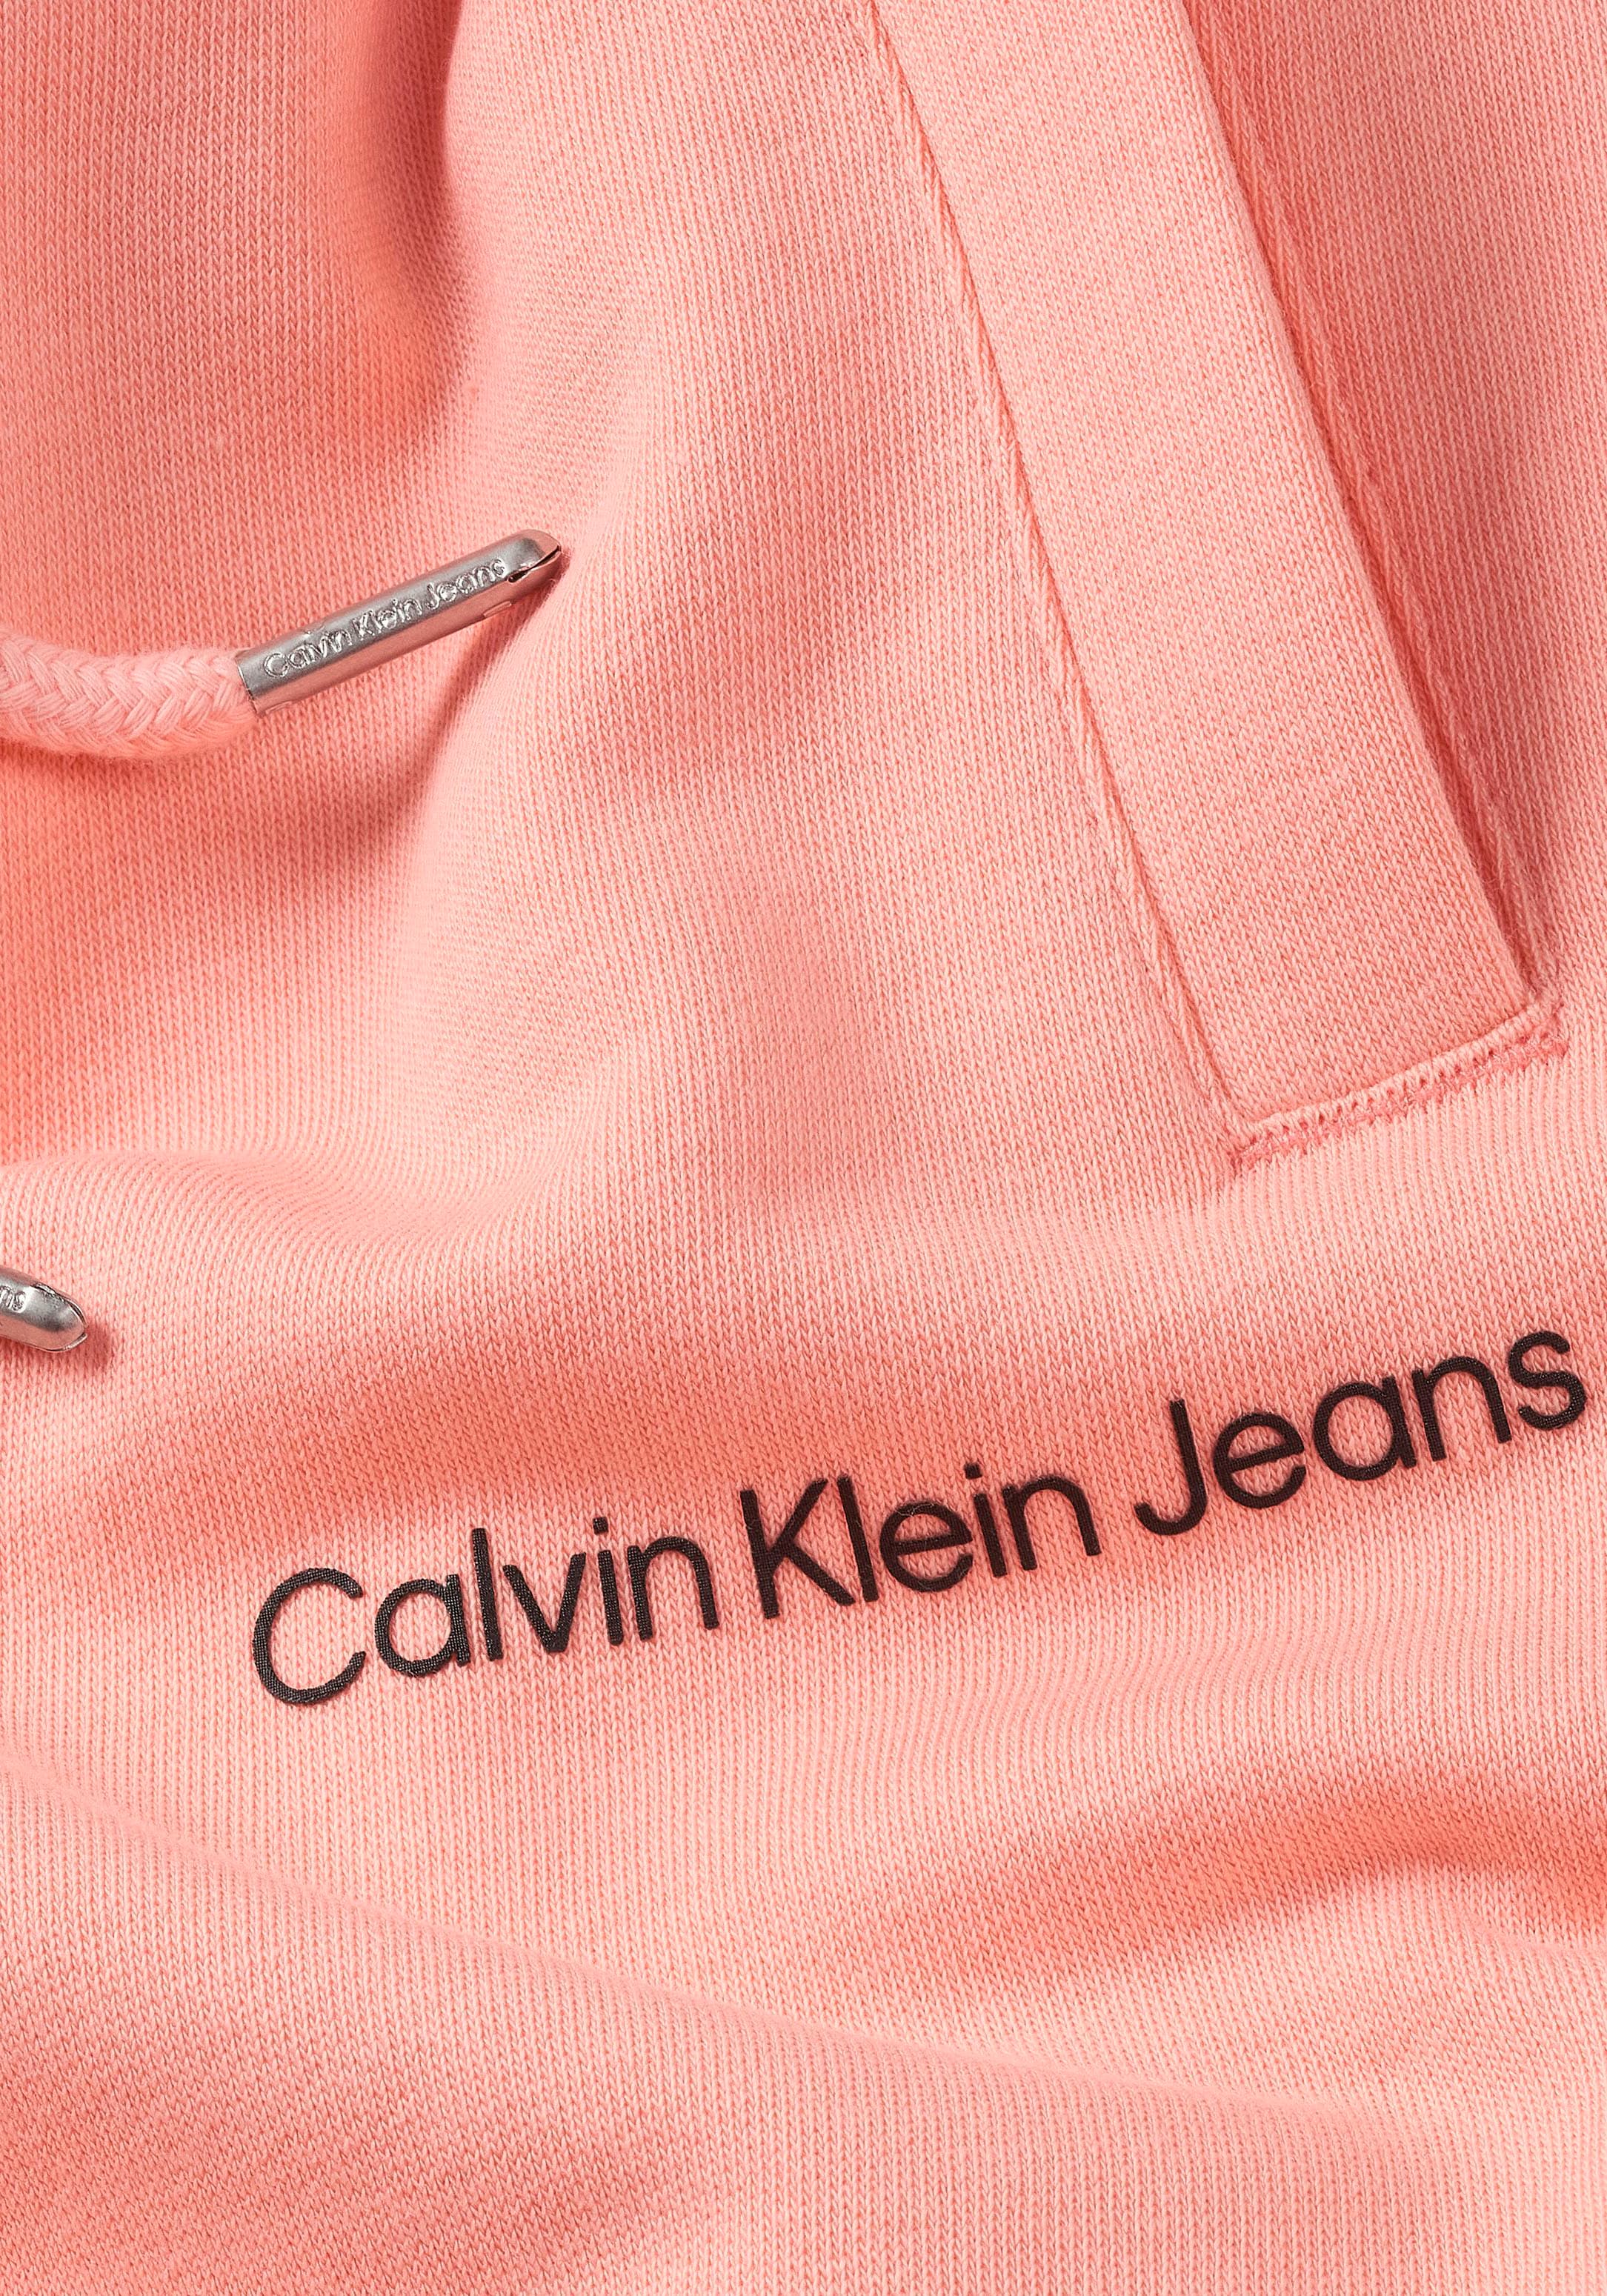 Calvin Klein Jeans Sweathose, Kinder Kids Junior MiniMe,mit Calvin Klein  Logoschriftzug auf dem Bein kaufen bei OTTO